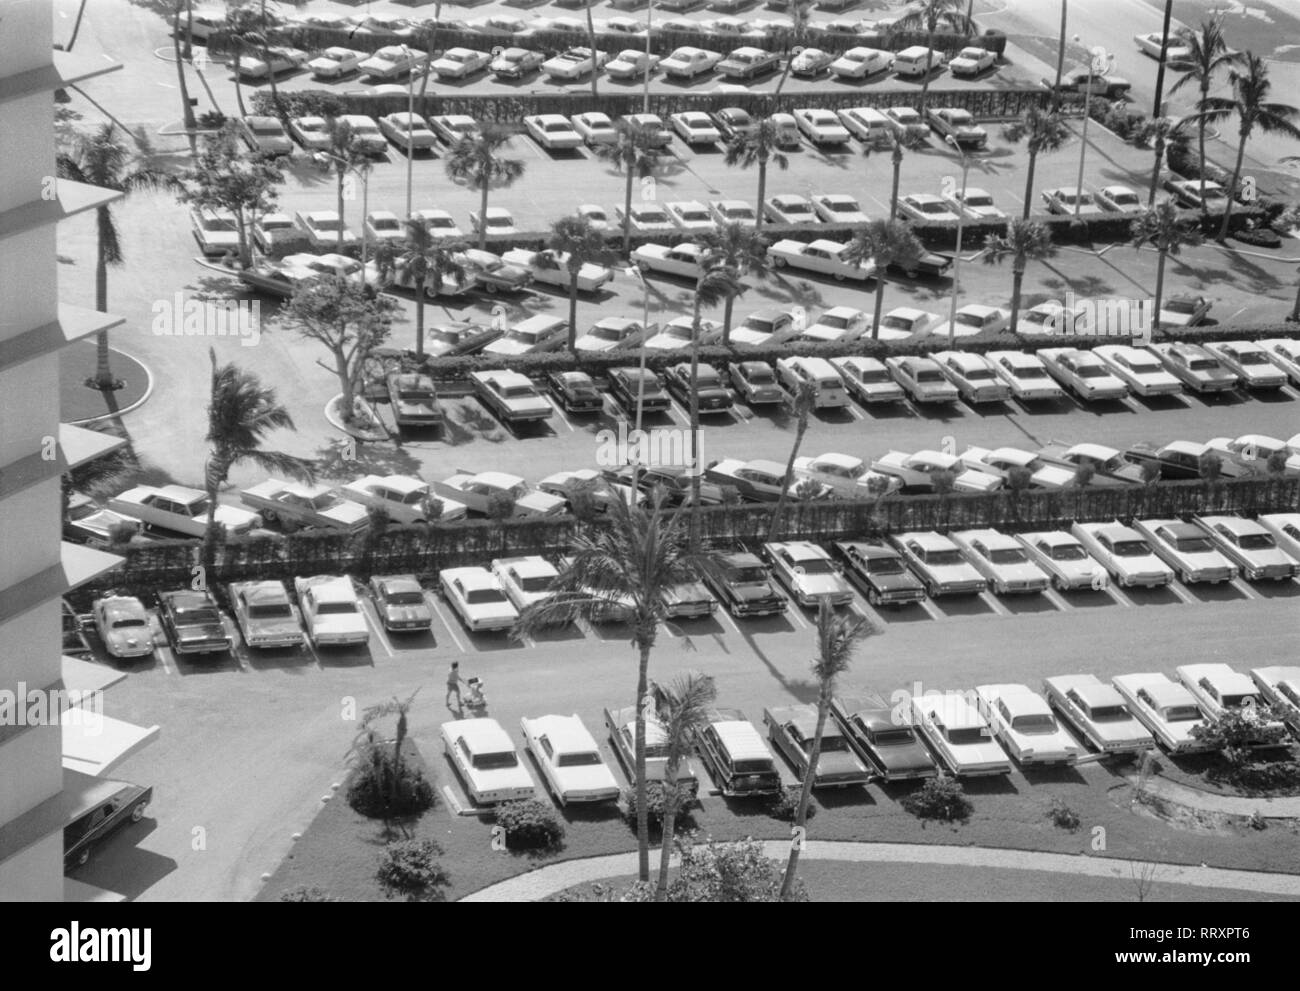 USA - Florida ca. 1959, Miami Beach, Blick vom Hochhaus auf den Parkplatz. View to parking area. Stock Photo